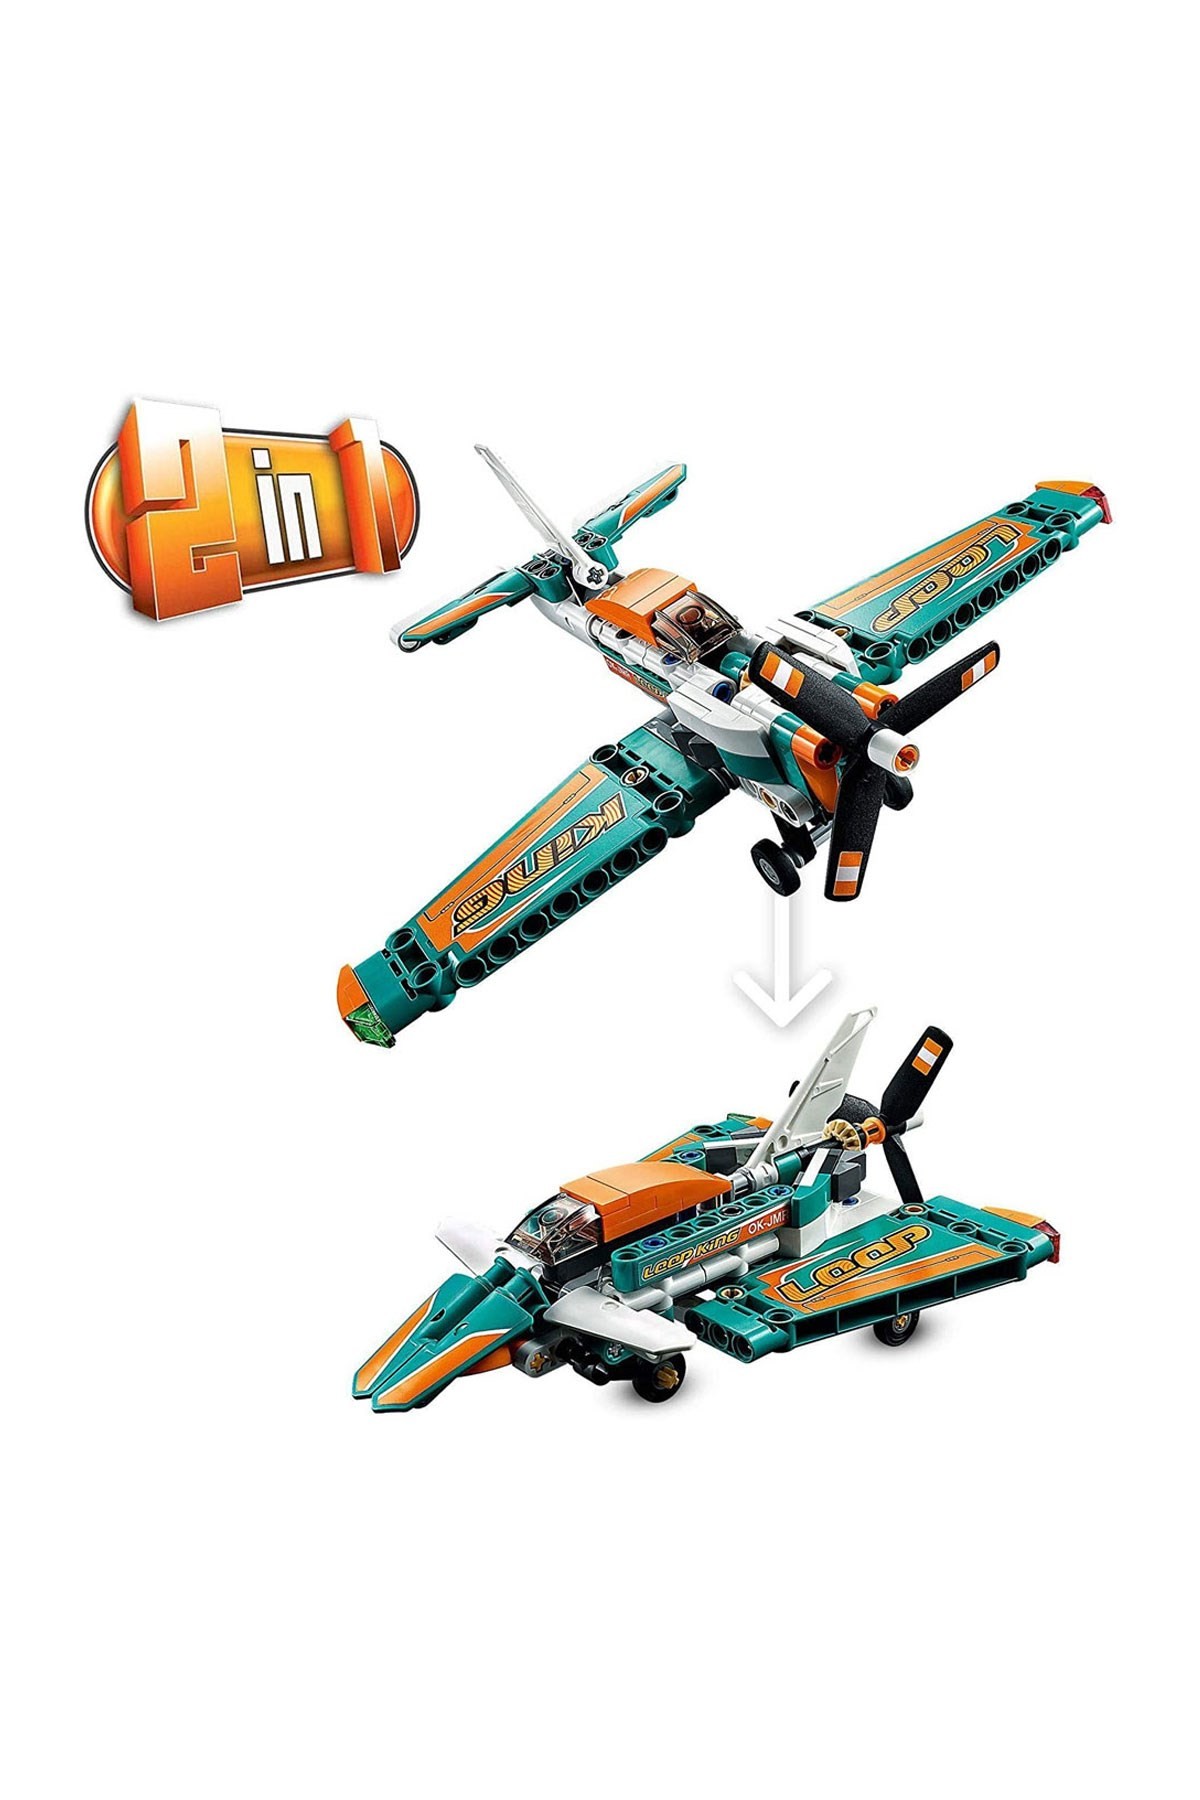 Lego Technic Yarış Uçağı 42117